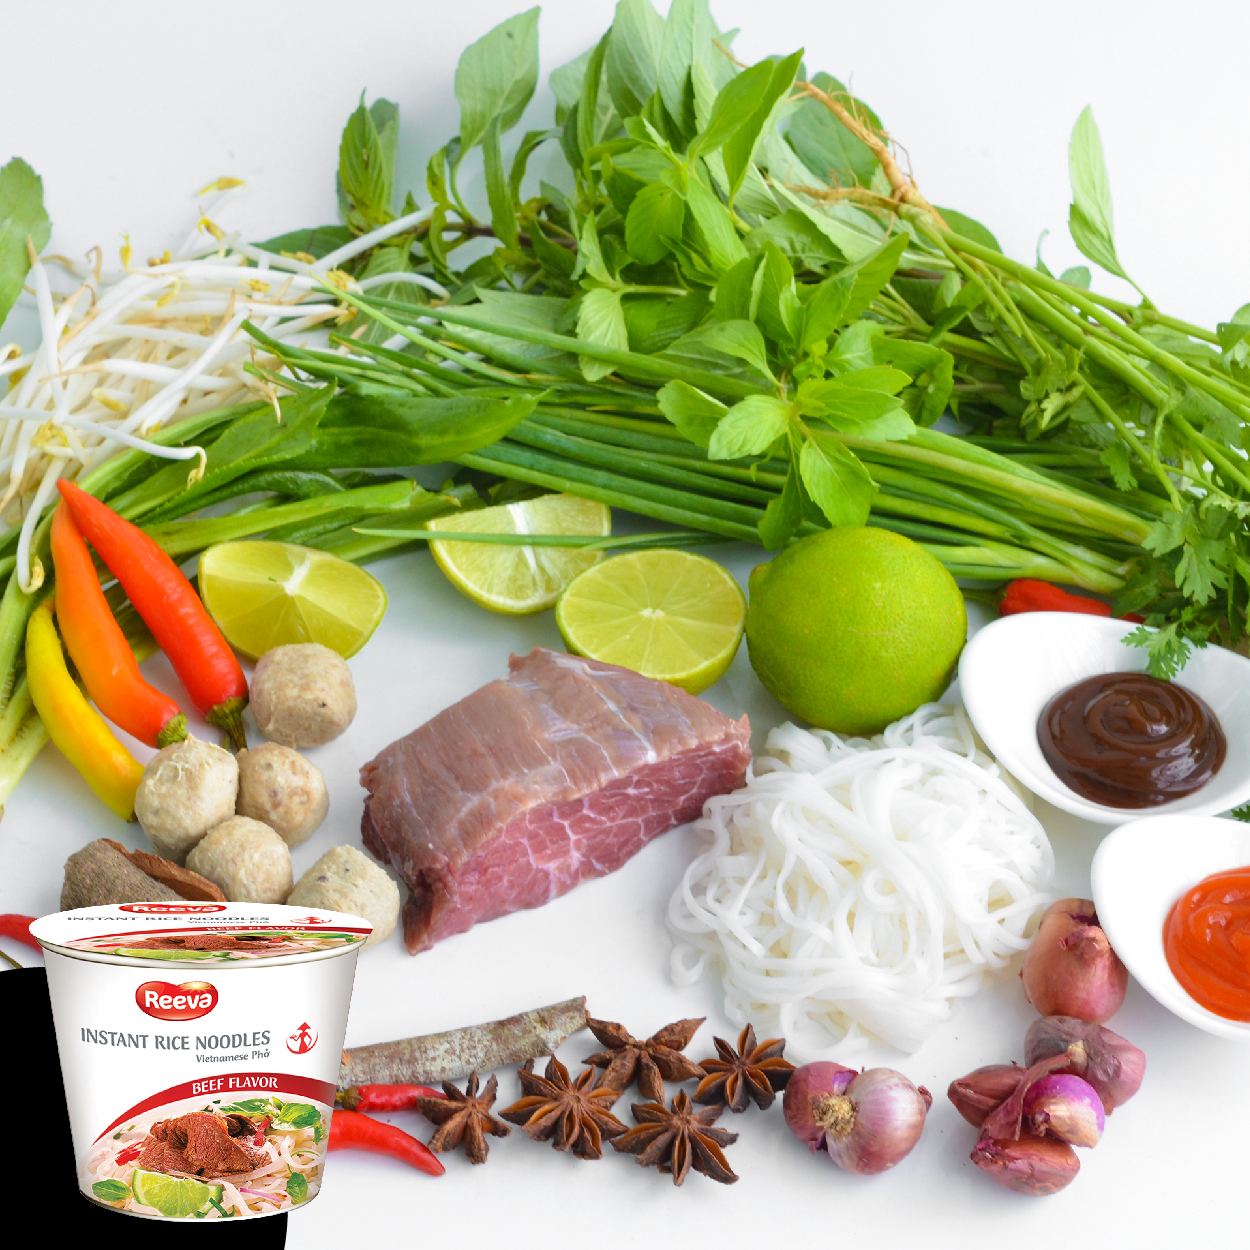 REEVA 越南瑞法河粉-牛肉風味  越南道地百年好滋味 體驗PHO的獨特魅力